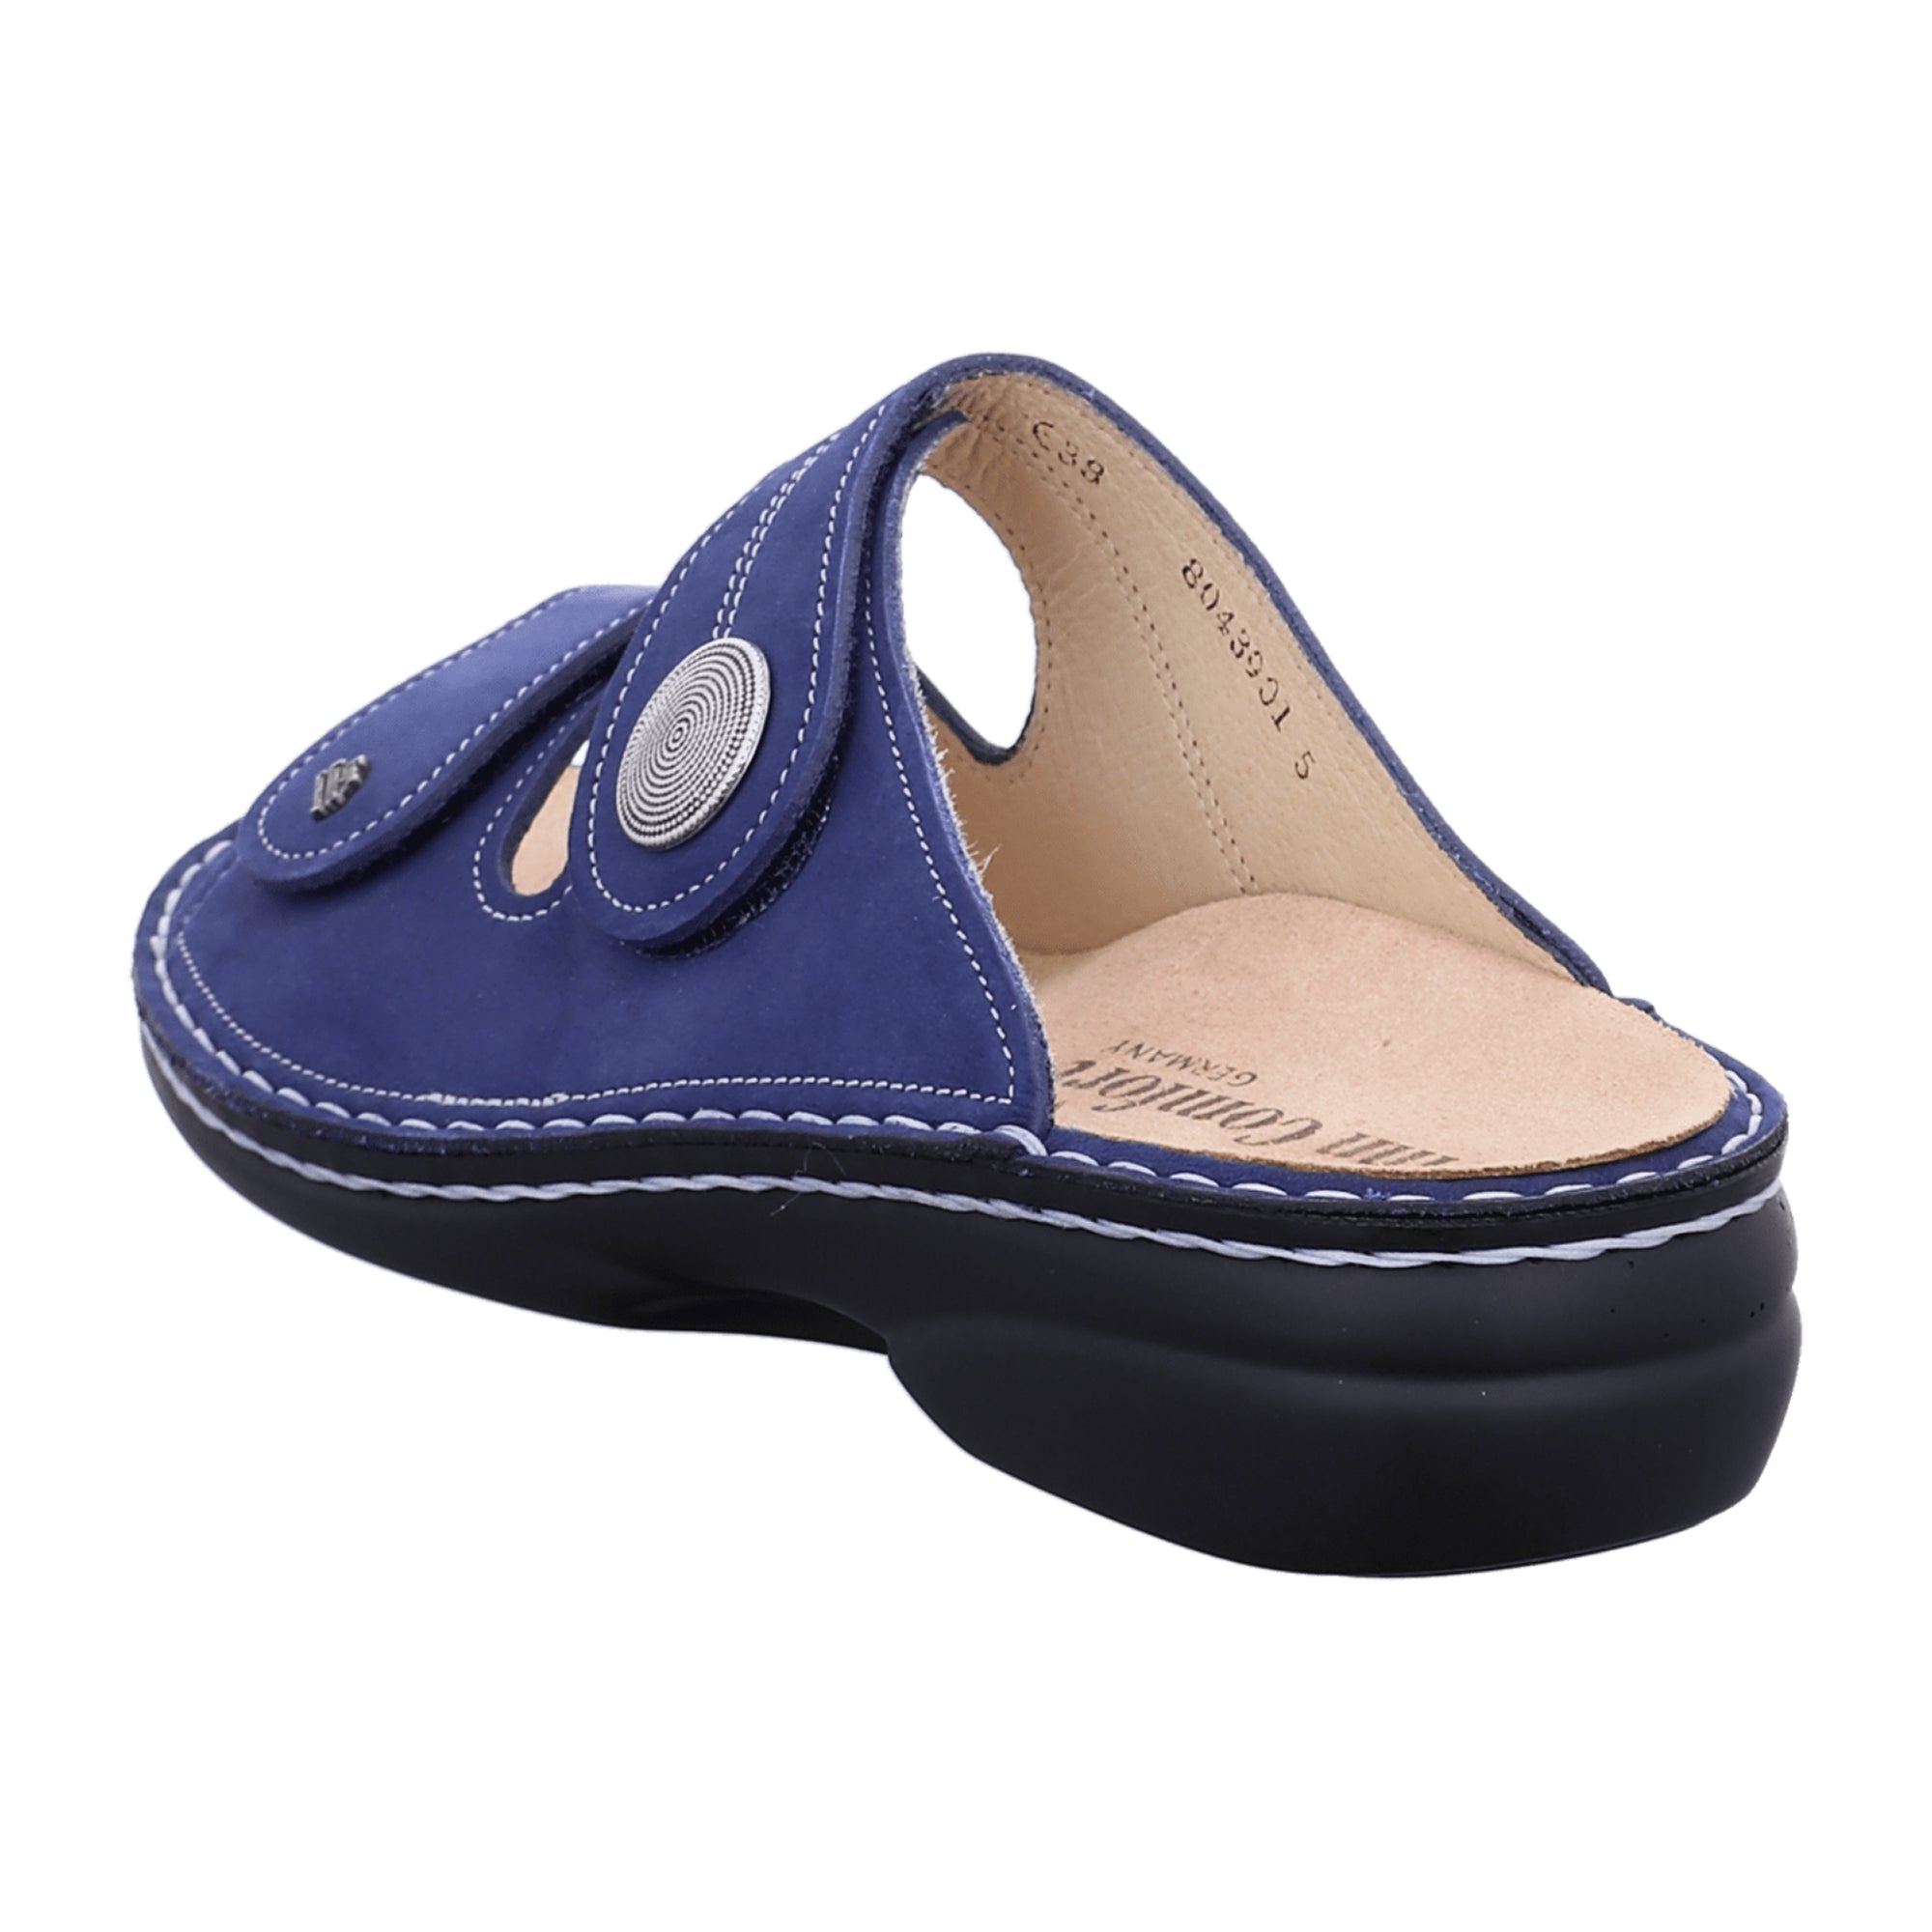 Finn Comfort Sansibar Women's Comfort Slides - Blue Nubuck Leather Sandals with Adjustable Straps